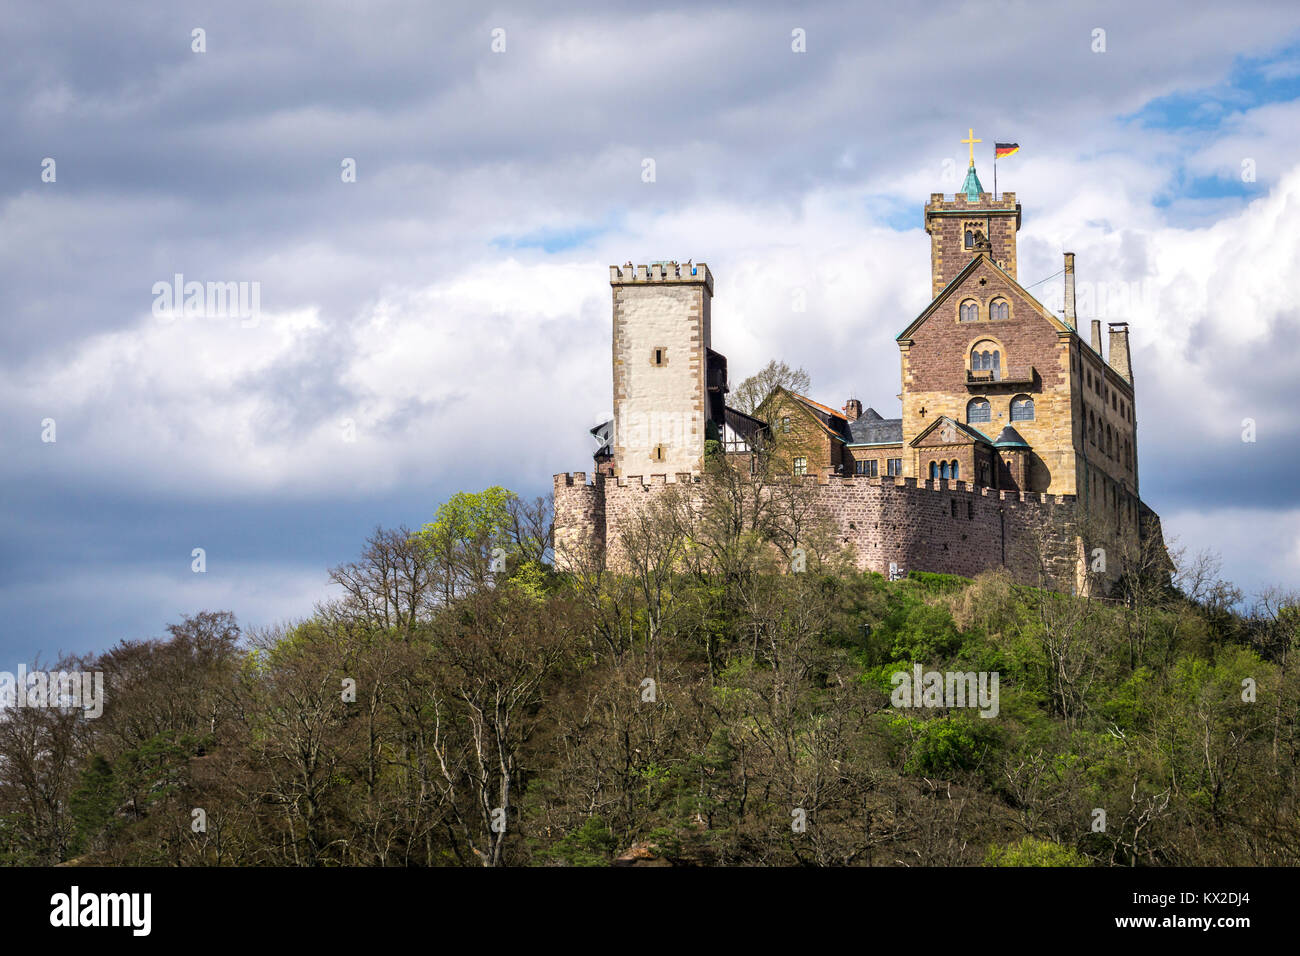 Wartburg Castle near Eisenach in Germany Stock Photo - Alamy